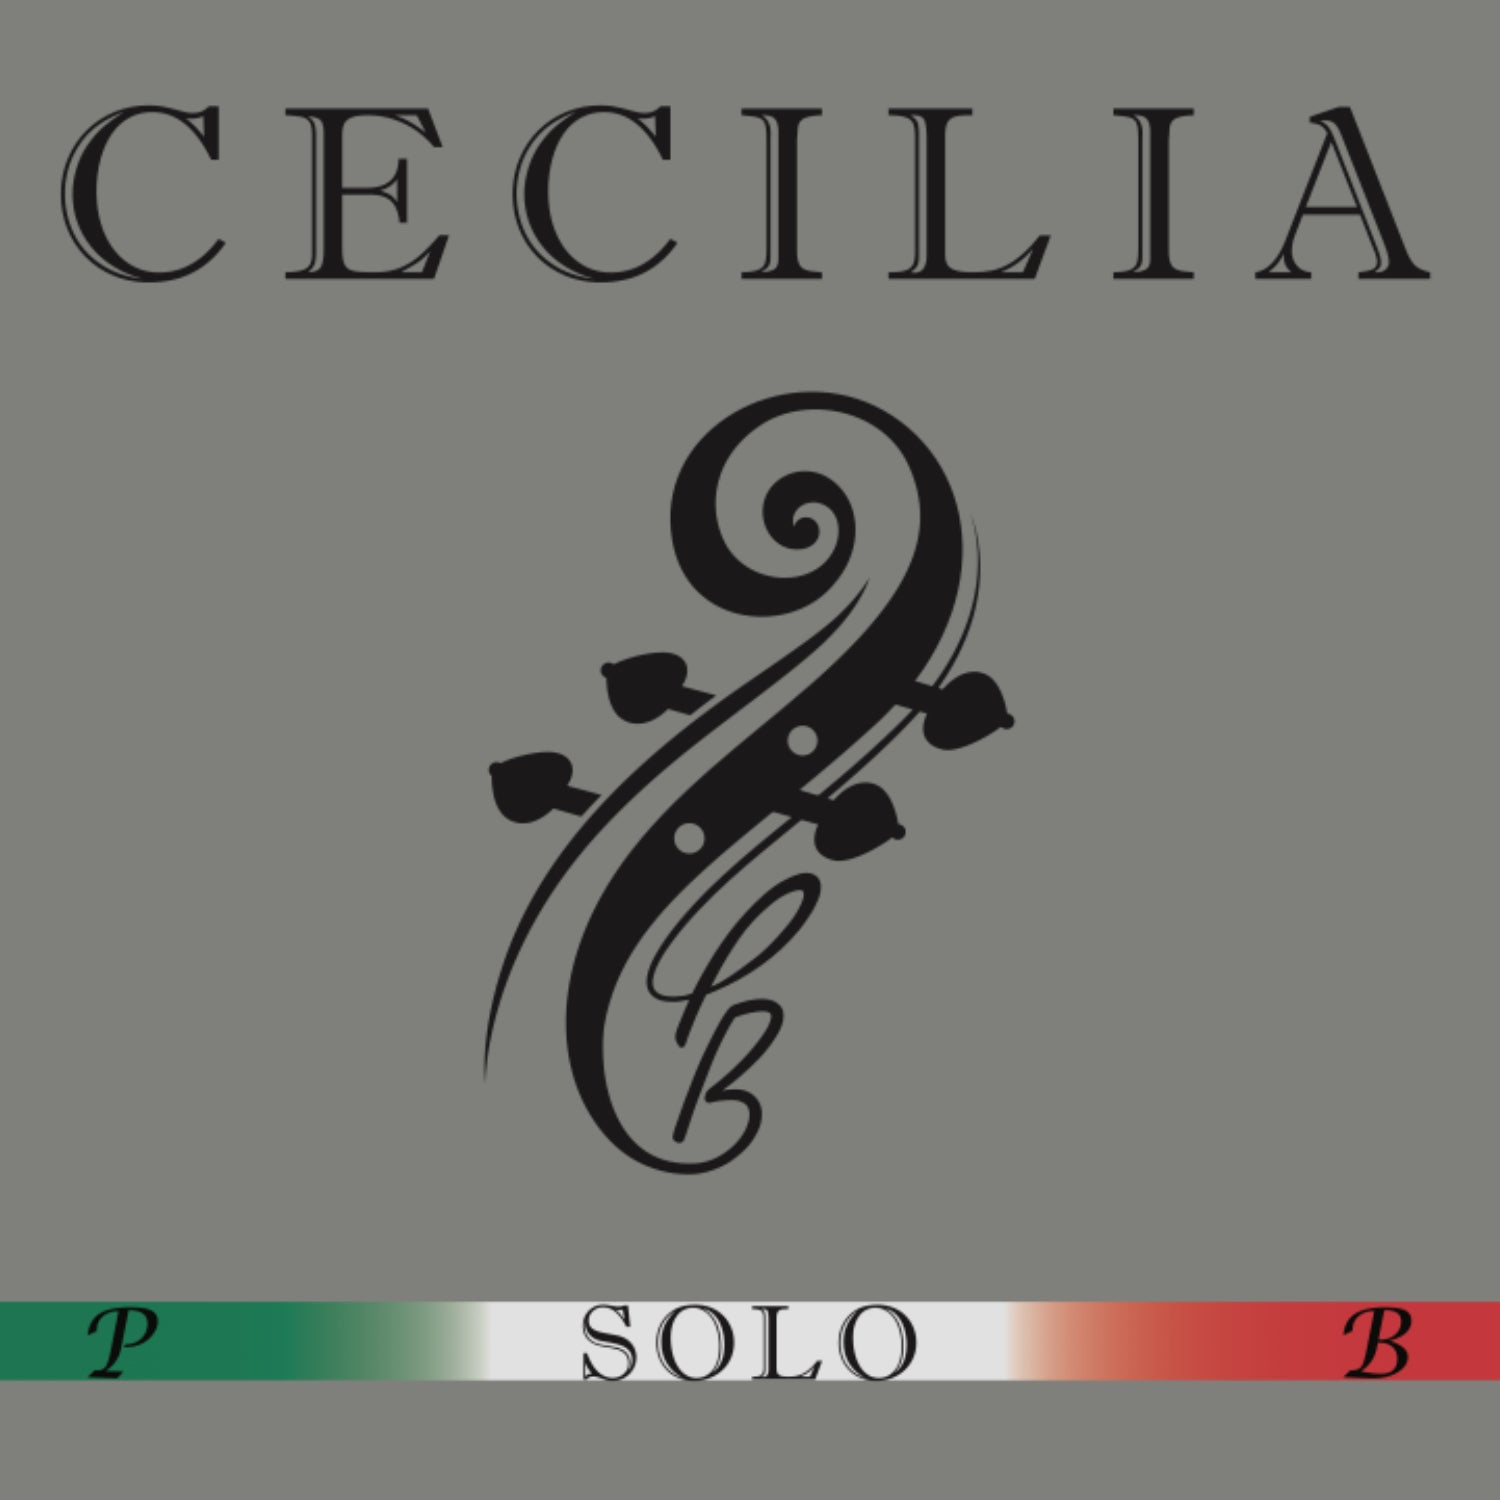 CECILIA SOLO Violin MINI with Spreader